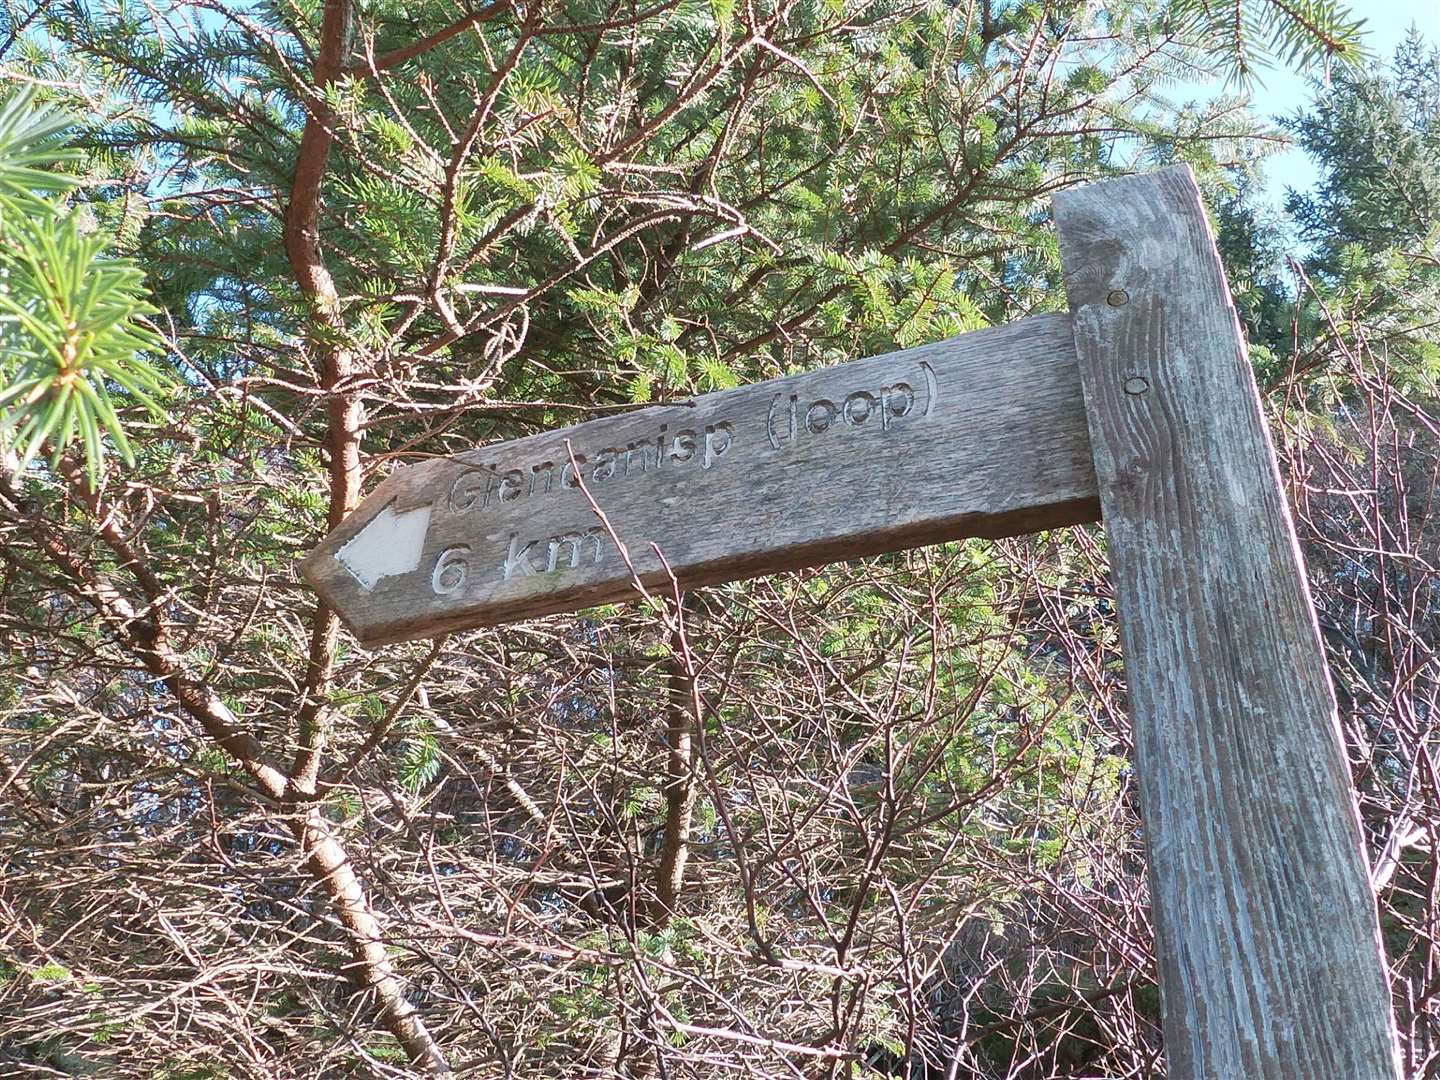 Sign for the Glencanisp loop.